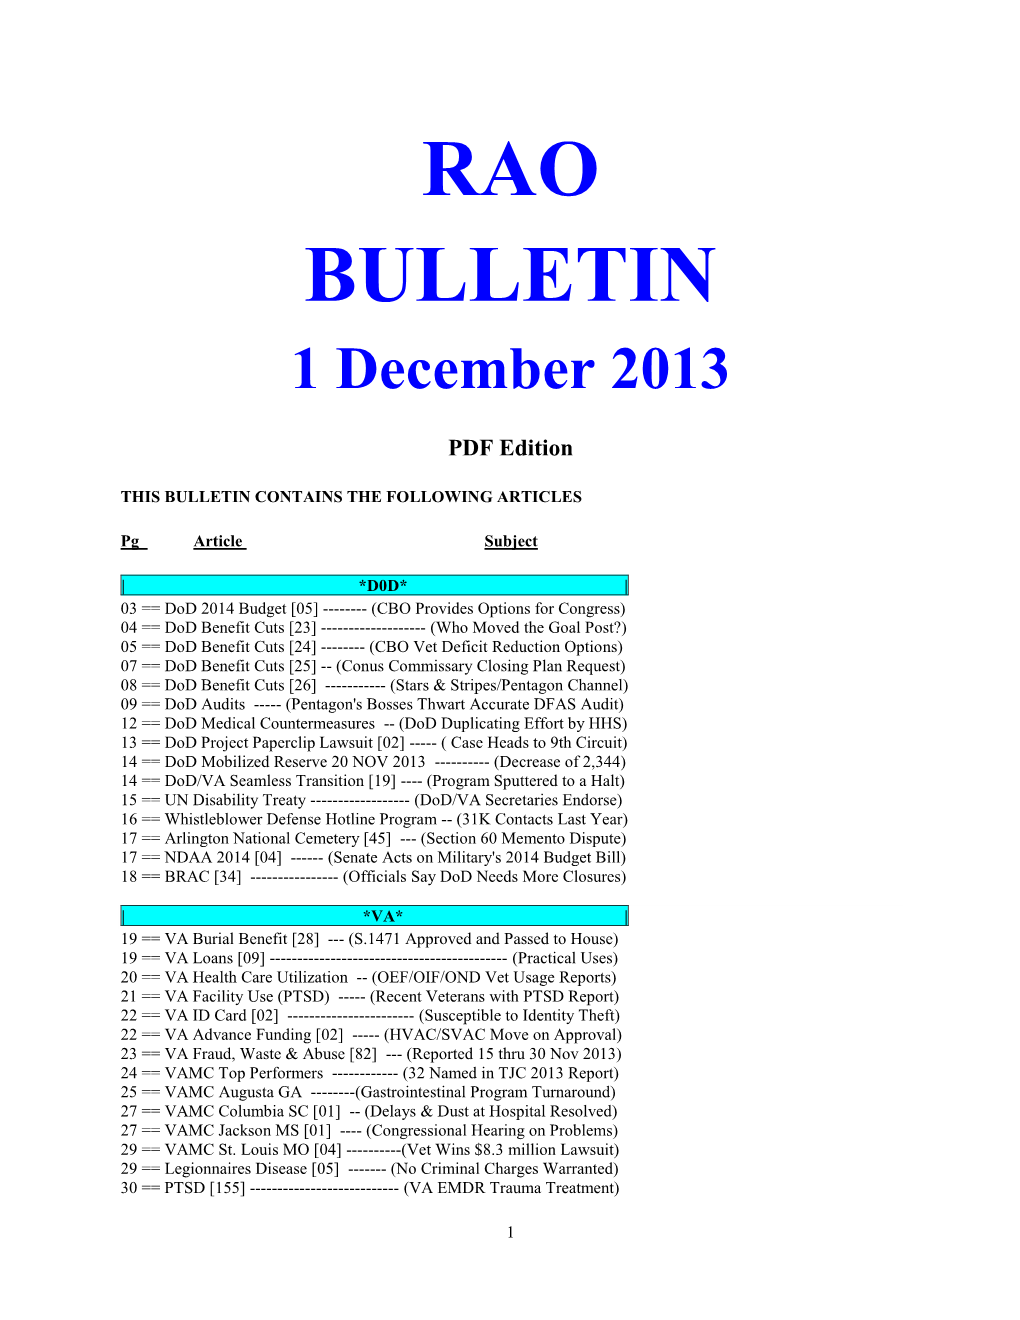 Bulletin 131201 (PDF Edition)